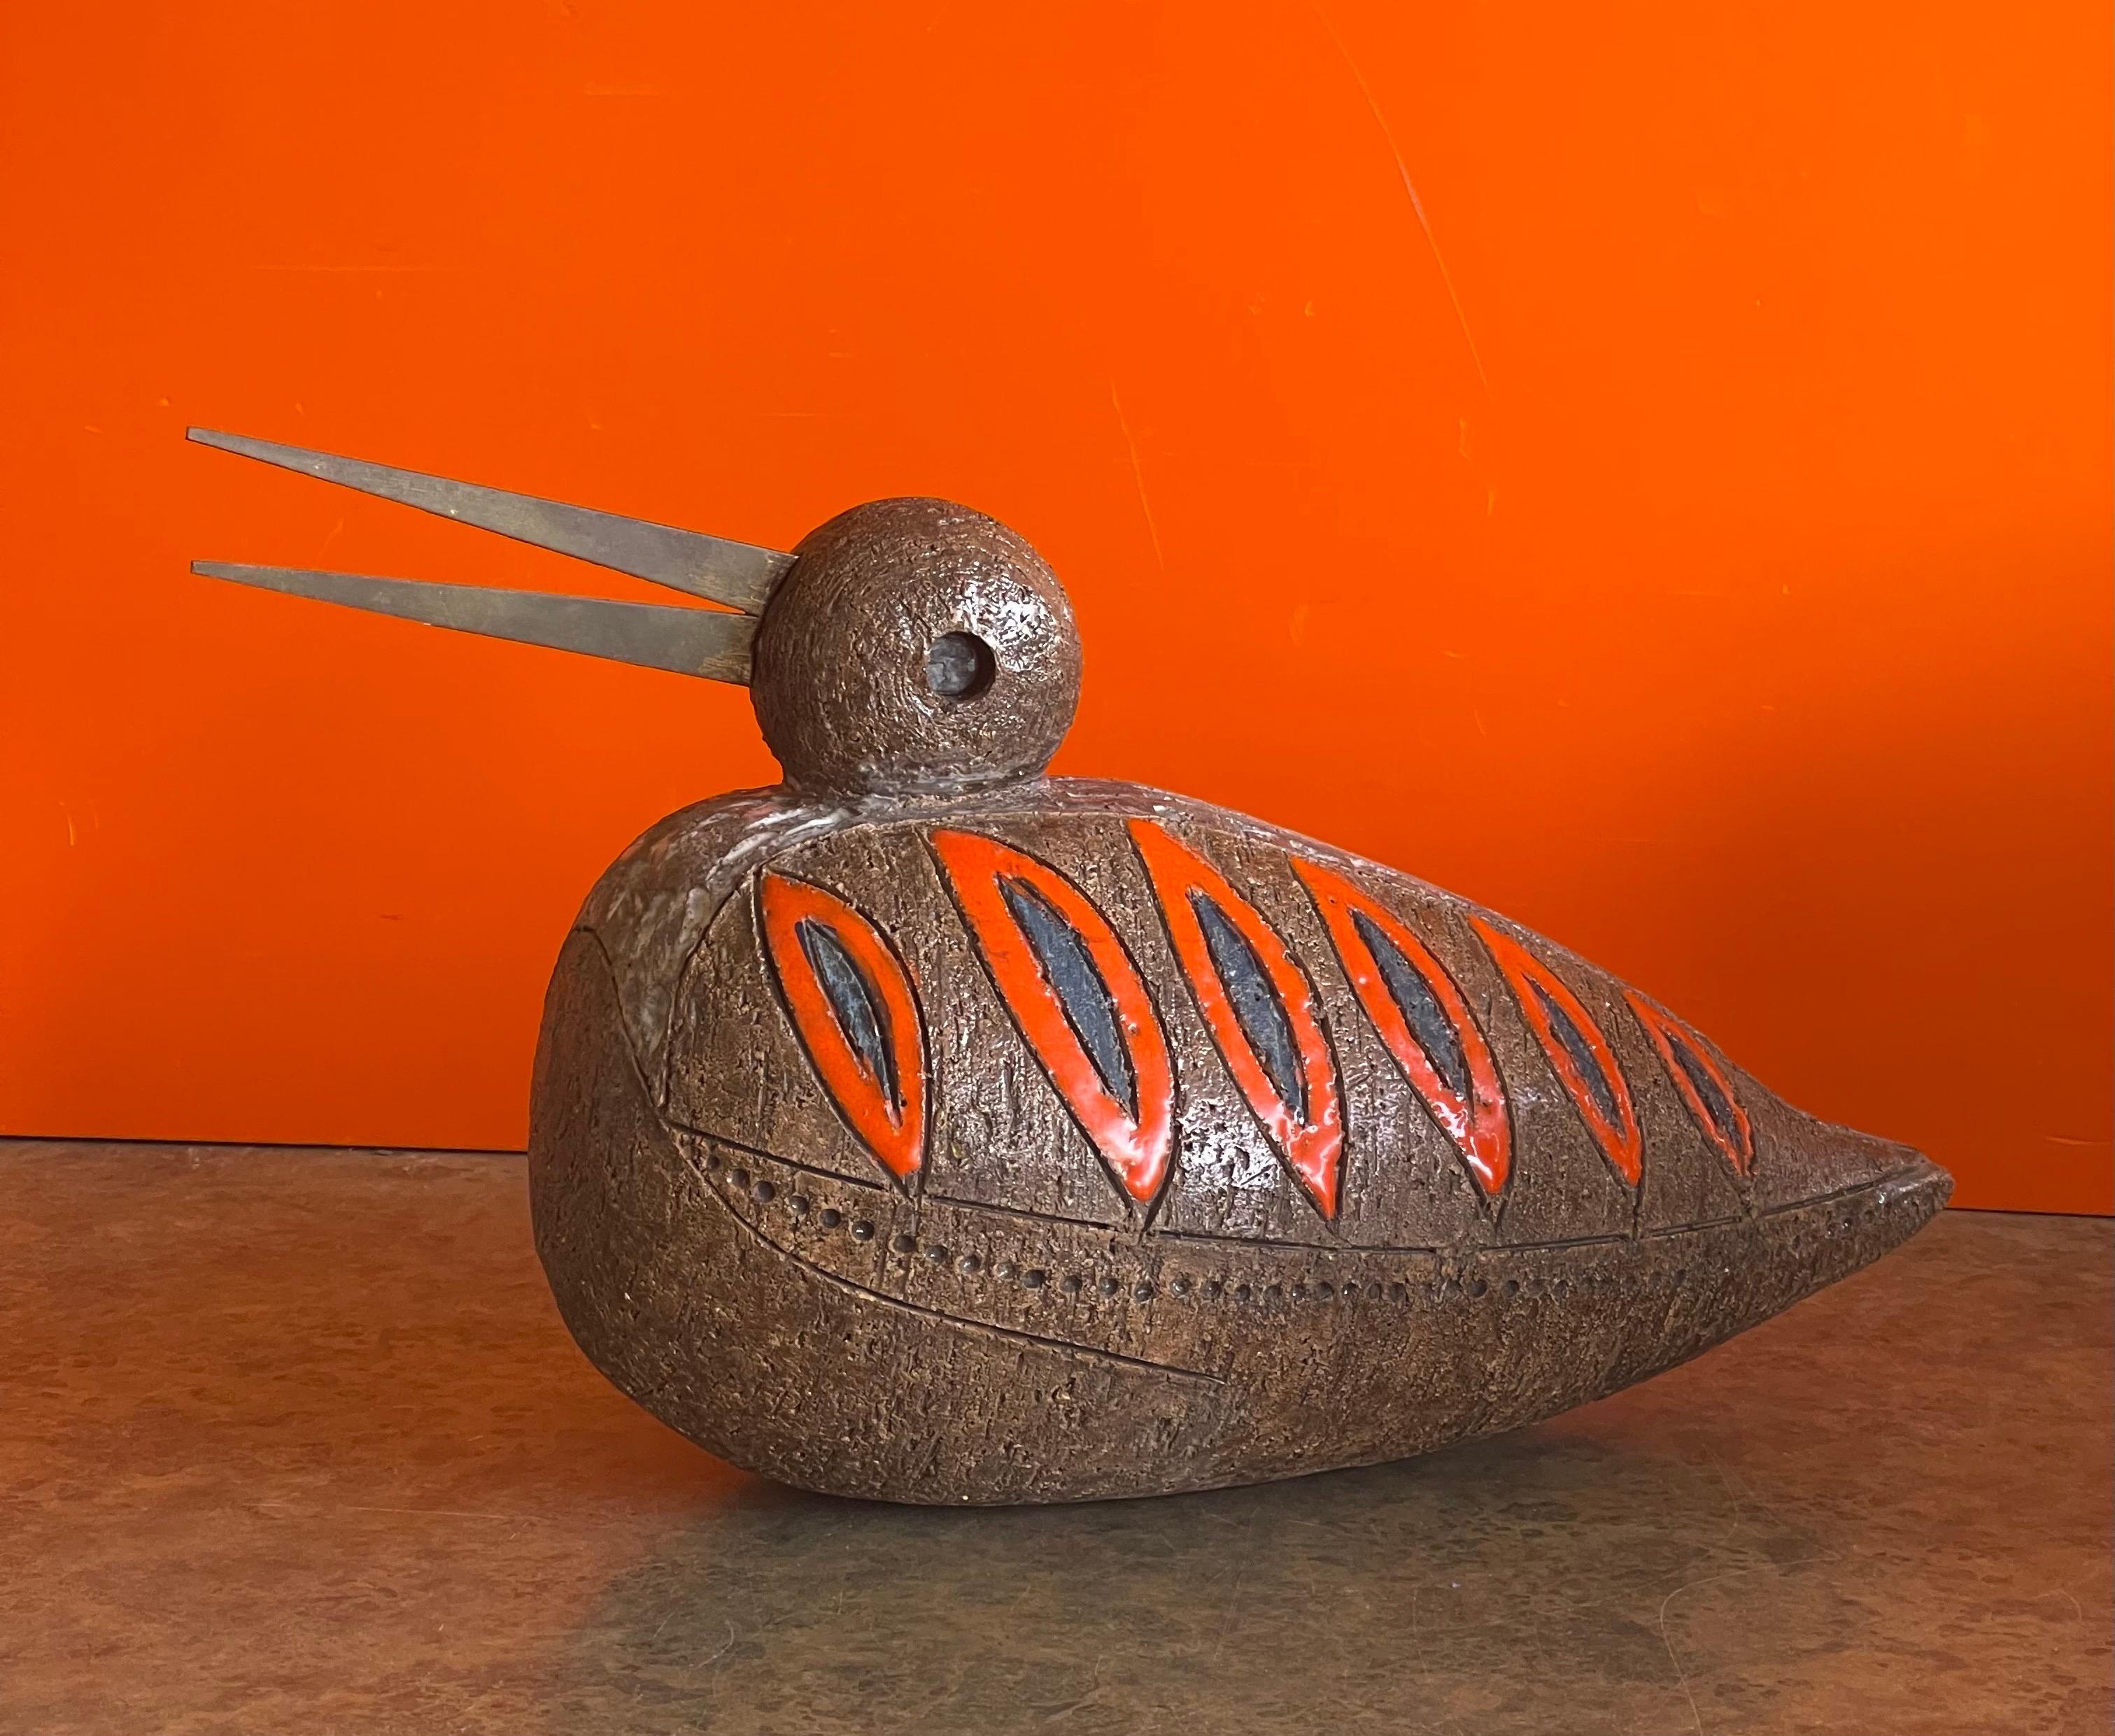 Vintage Keramik Vogel / Ente Skulptur von Aldo Londi für Bitossi Raymor, ca. 1960er Jahre. Das Stück ist in sehr gutem Vintage-Zustand mit toller Farbe und Textur; es wäre eine fantastische Ergänzung für jede Sammlung aus der Mitte des Jahrhunderts.